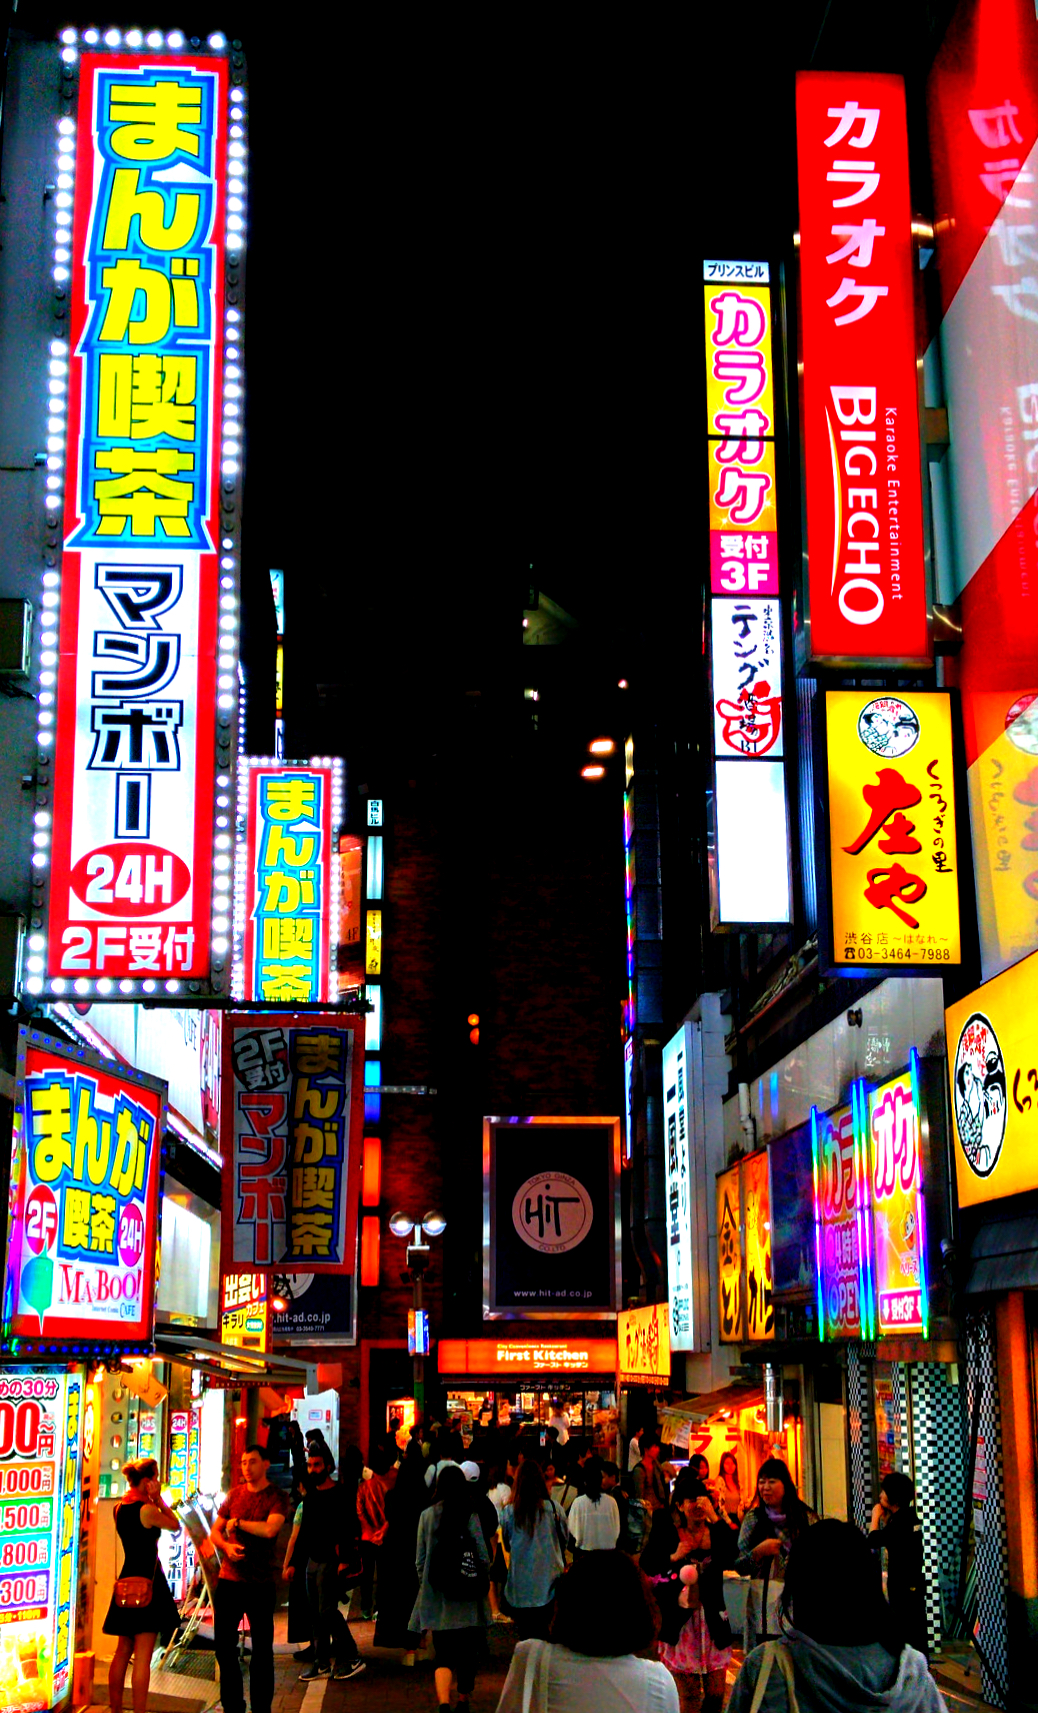 Neon glory, Tokyo